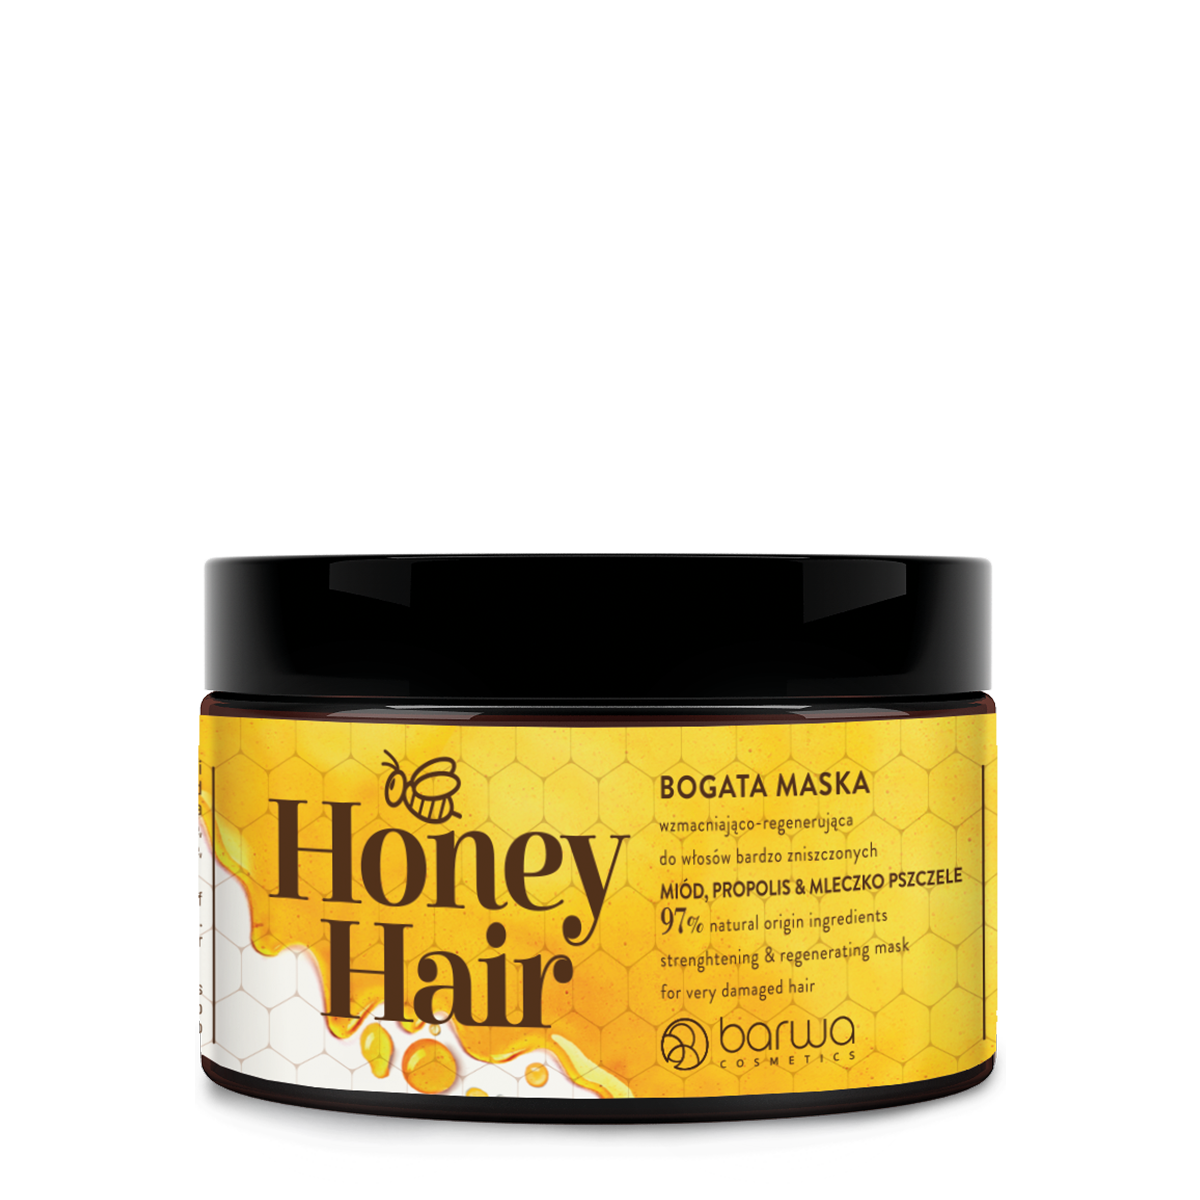 Укрепляющая и восстанавливающая маска для волос Barwa Honey Hair, 220 мл романова ольга владимировна здоровье из улья мед прополис перга маточное молочко